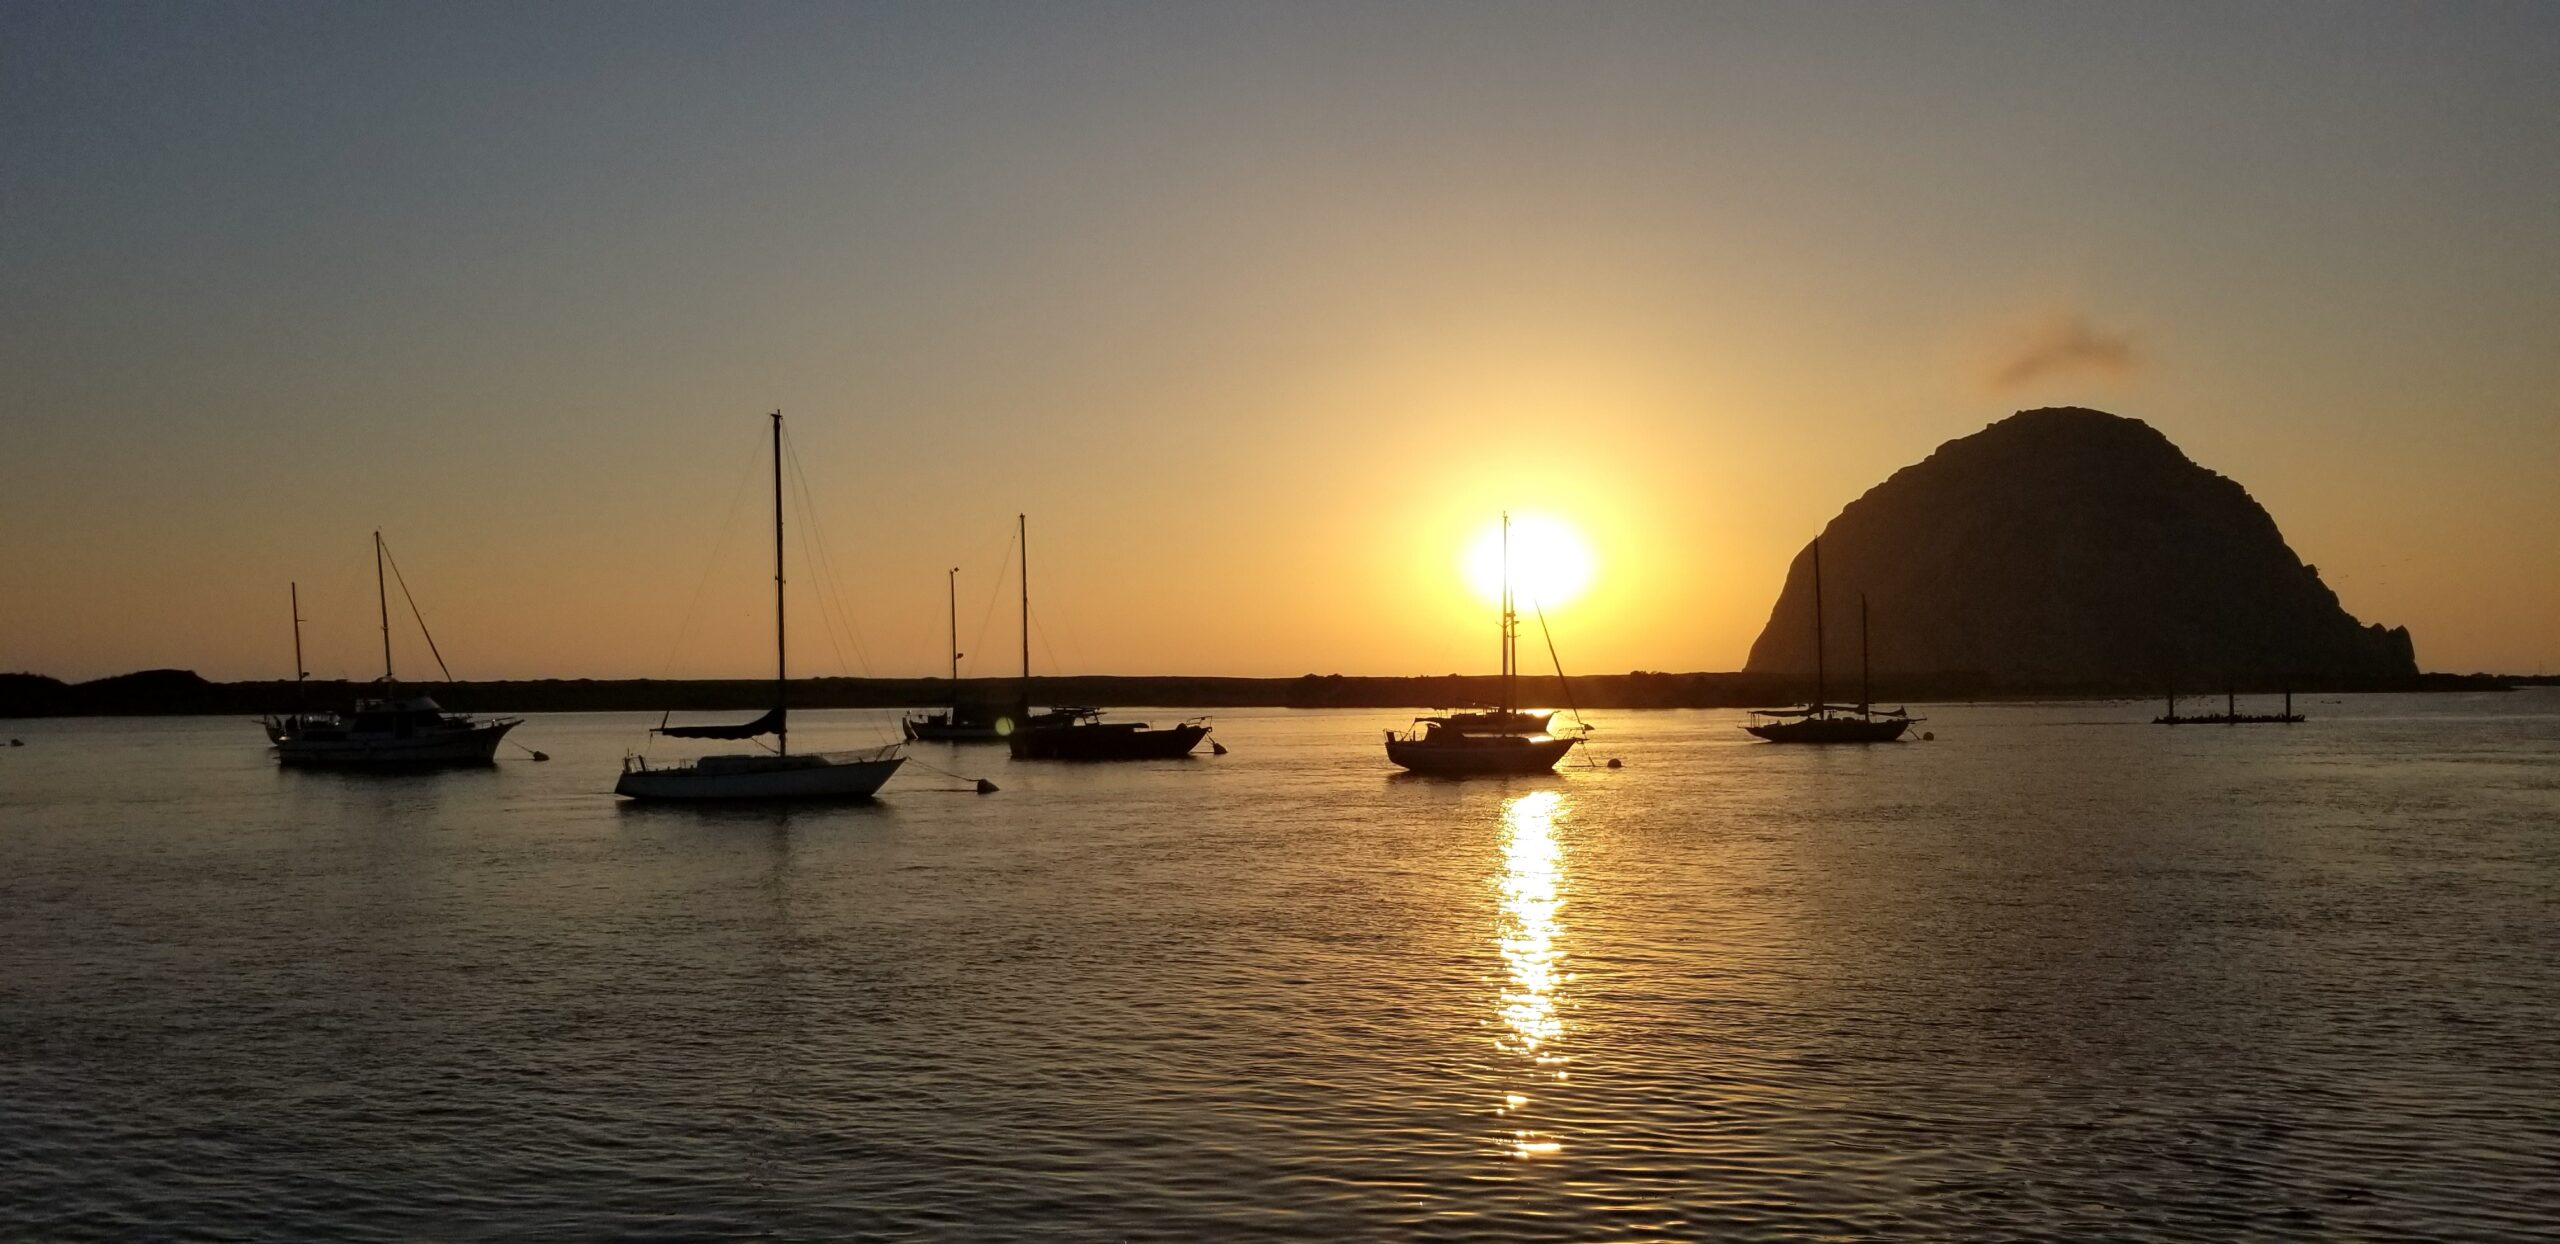 Sail boats at sunset 